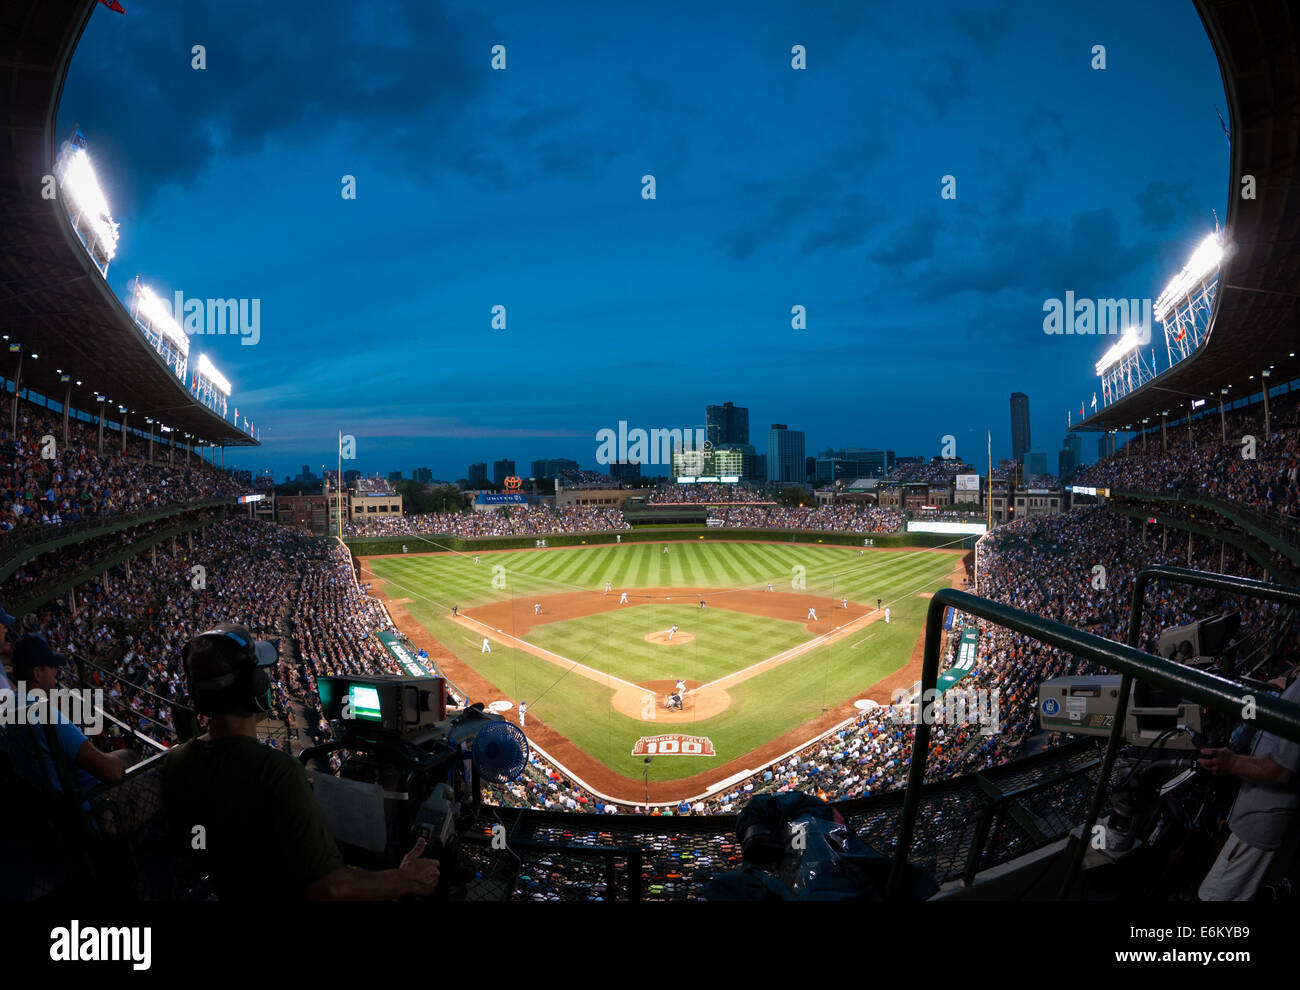 Un pez, ángulo de visión amplio Wrigley Field de Chicago Cubs y durante un partido de béisbol de los Giants de San Francisco el 20 de agosto de 2014. Wrigley Field, Chicago. Foto de stock